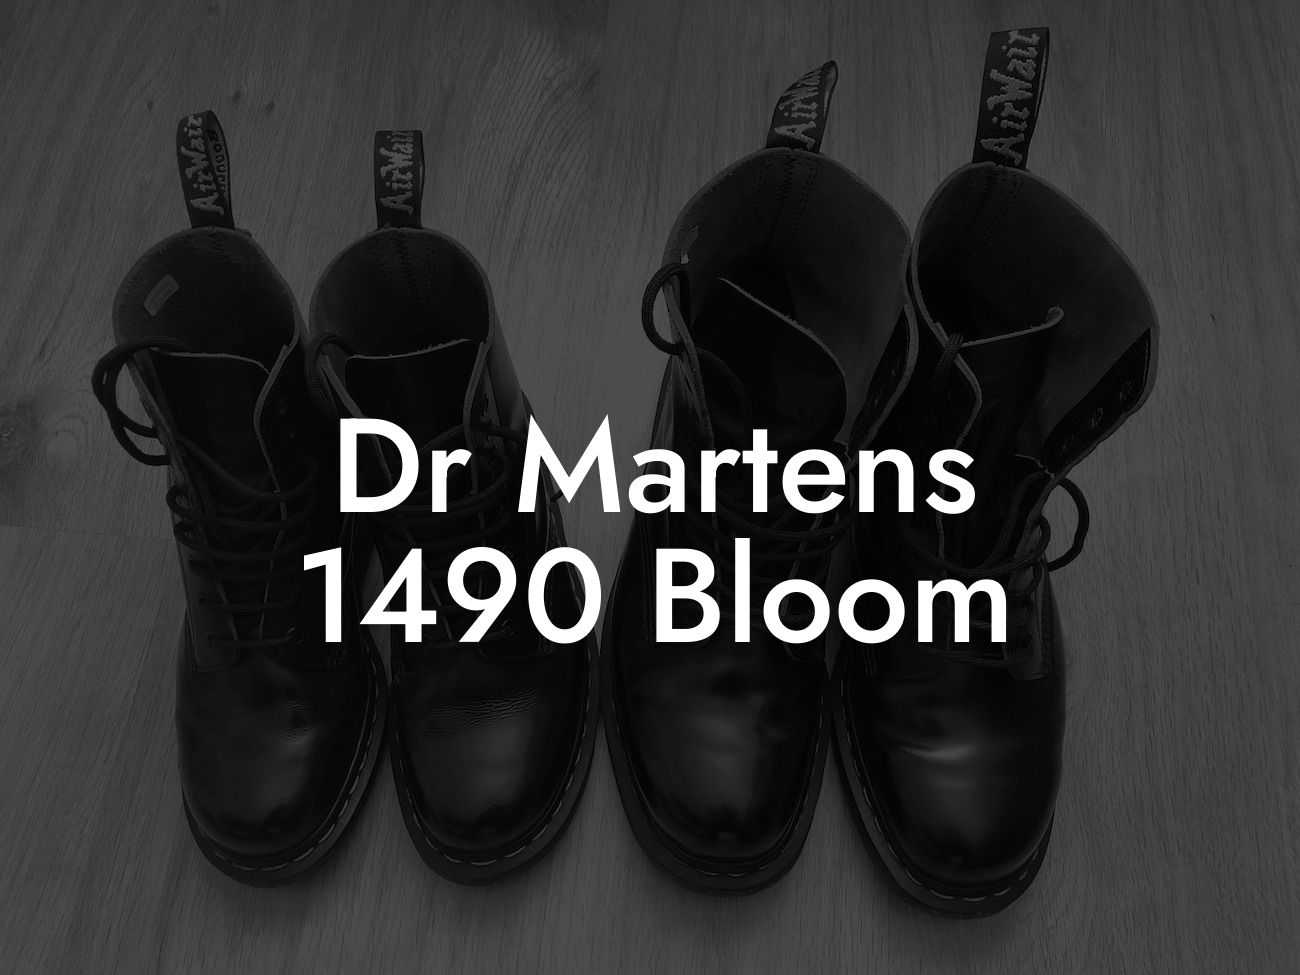 Dr Martens 1490 Bloom